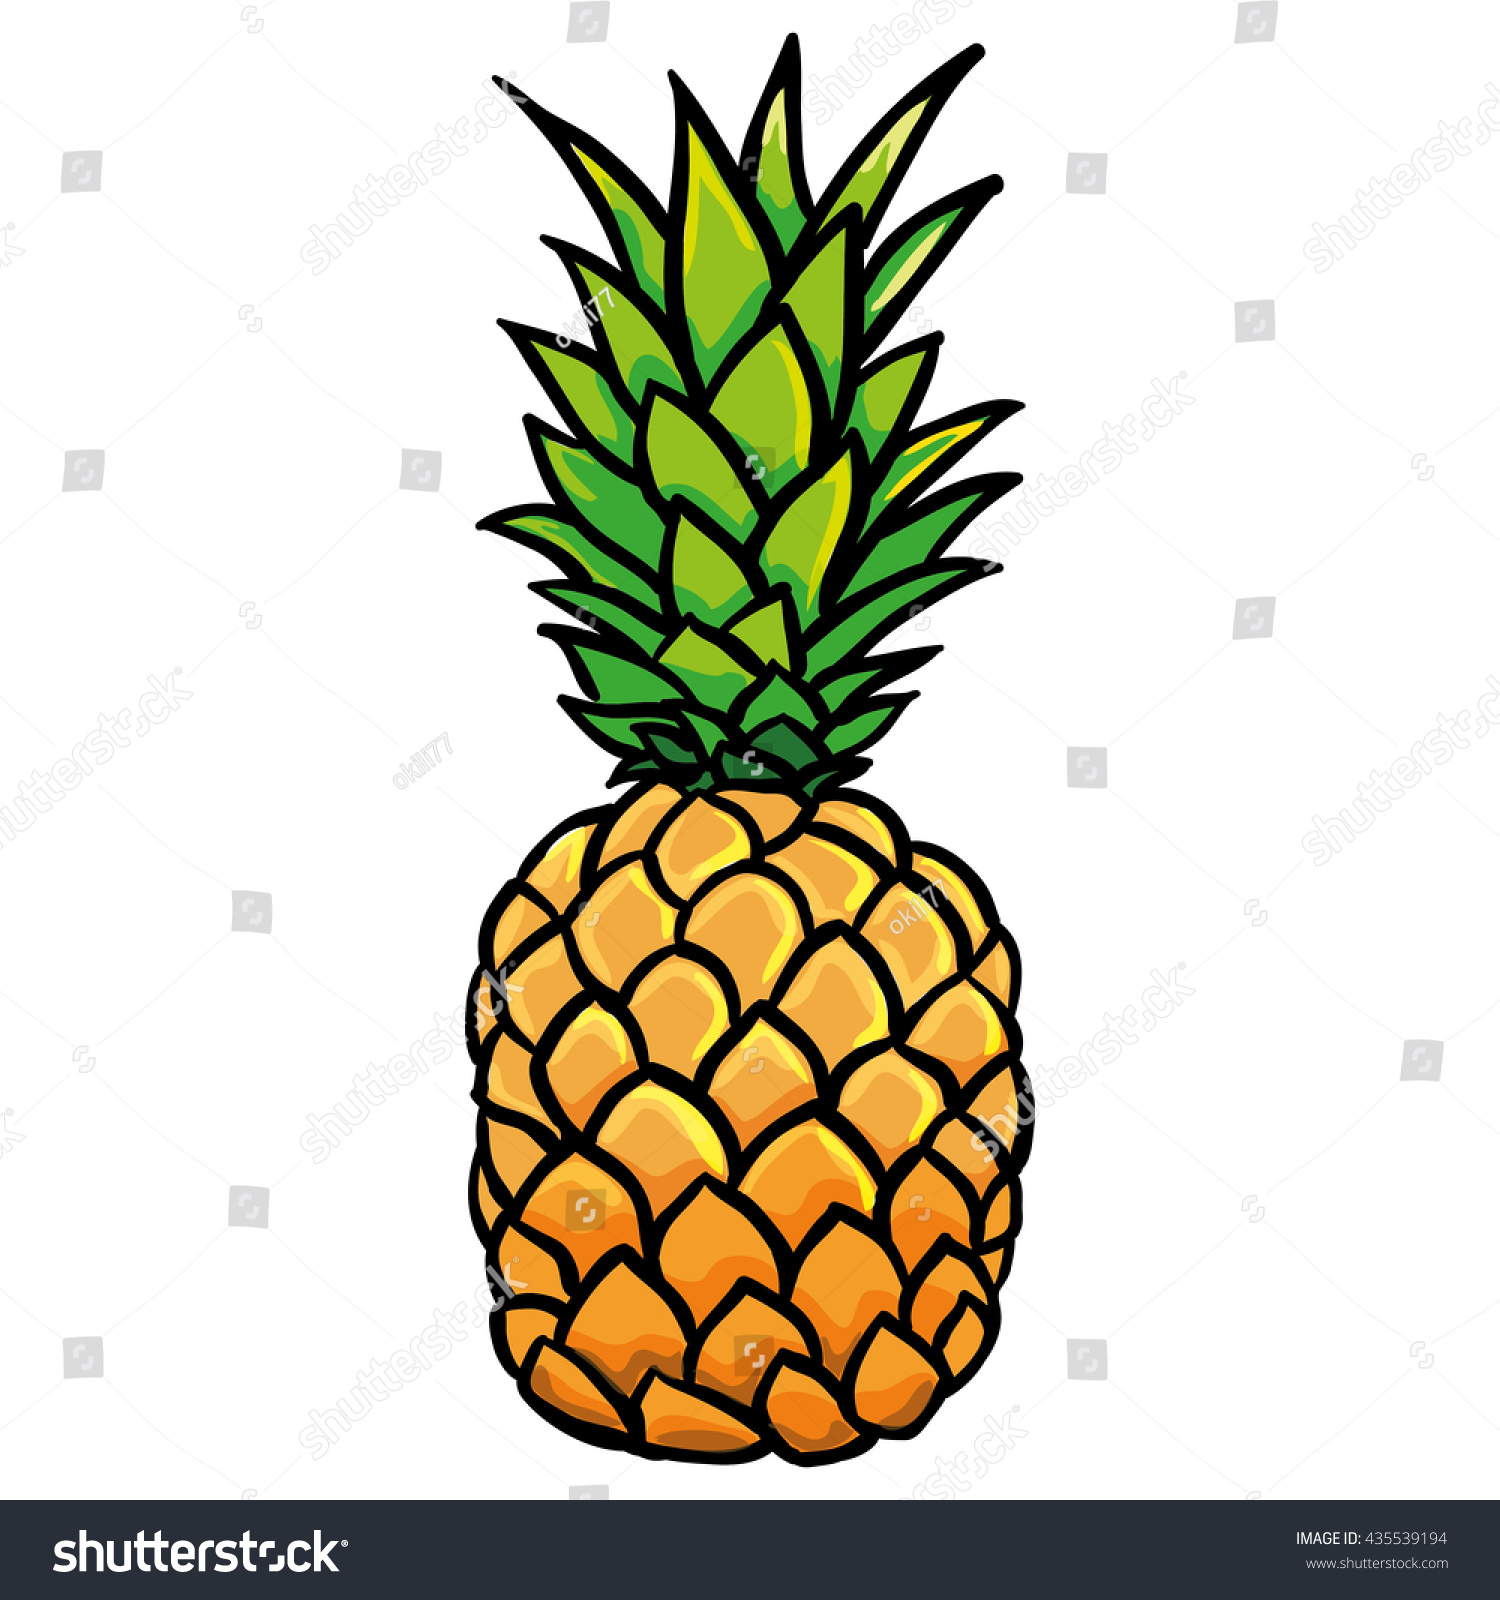 Pineapple illustration Shutterstock